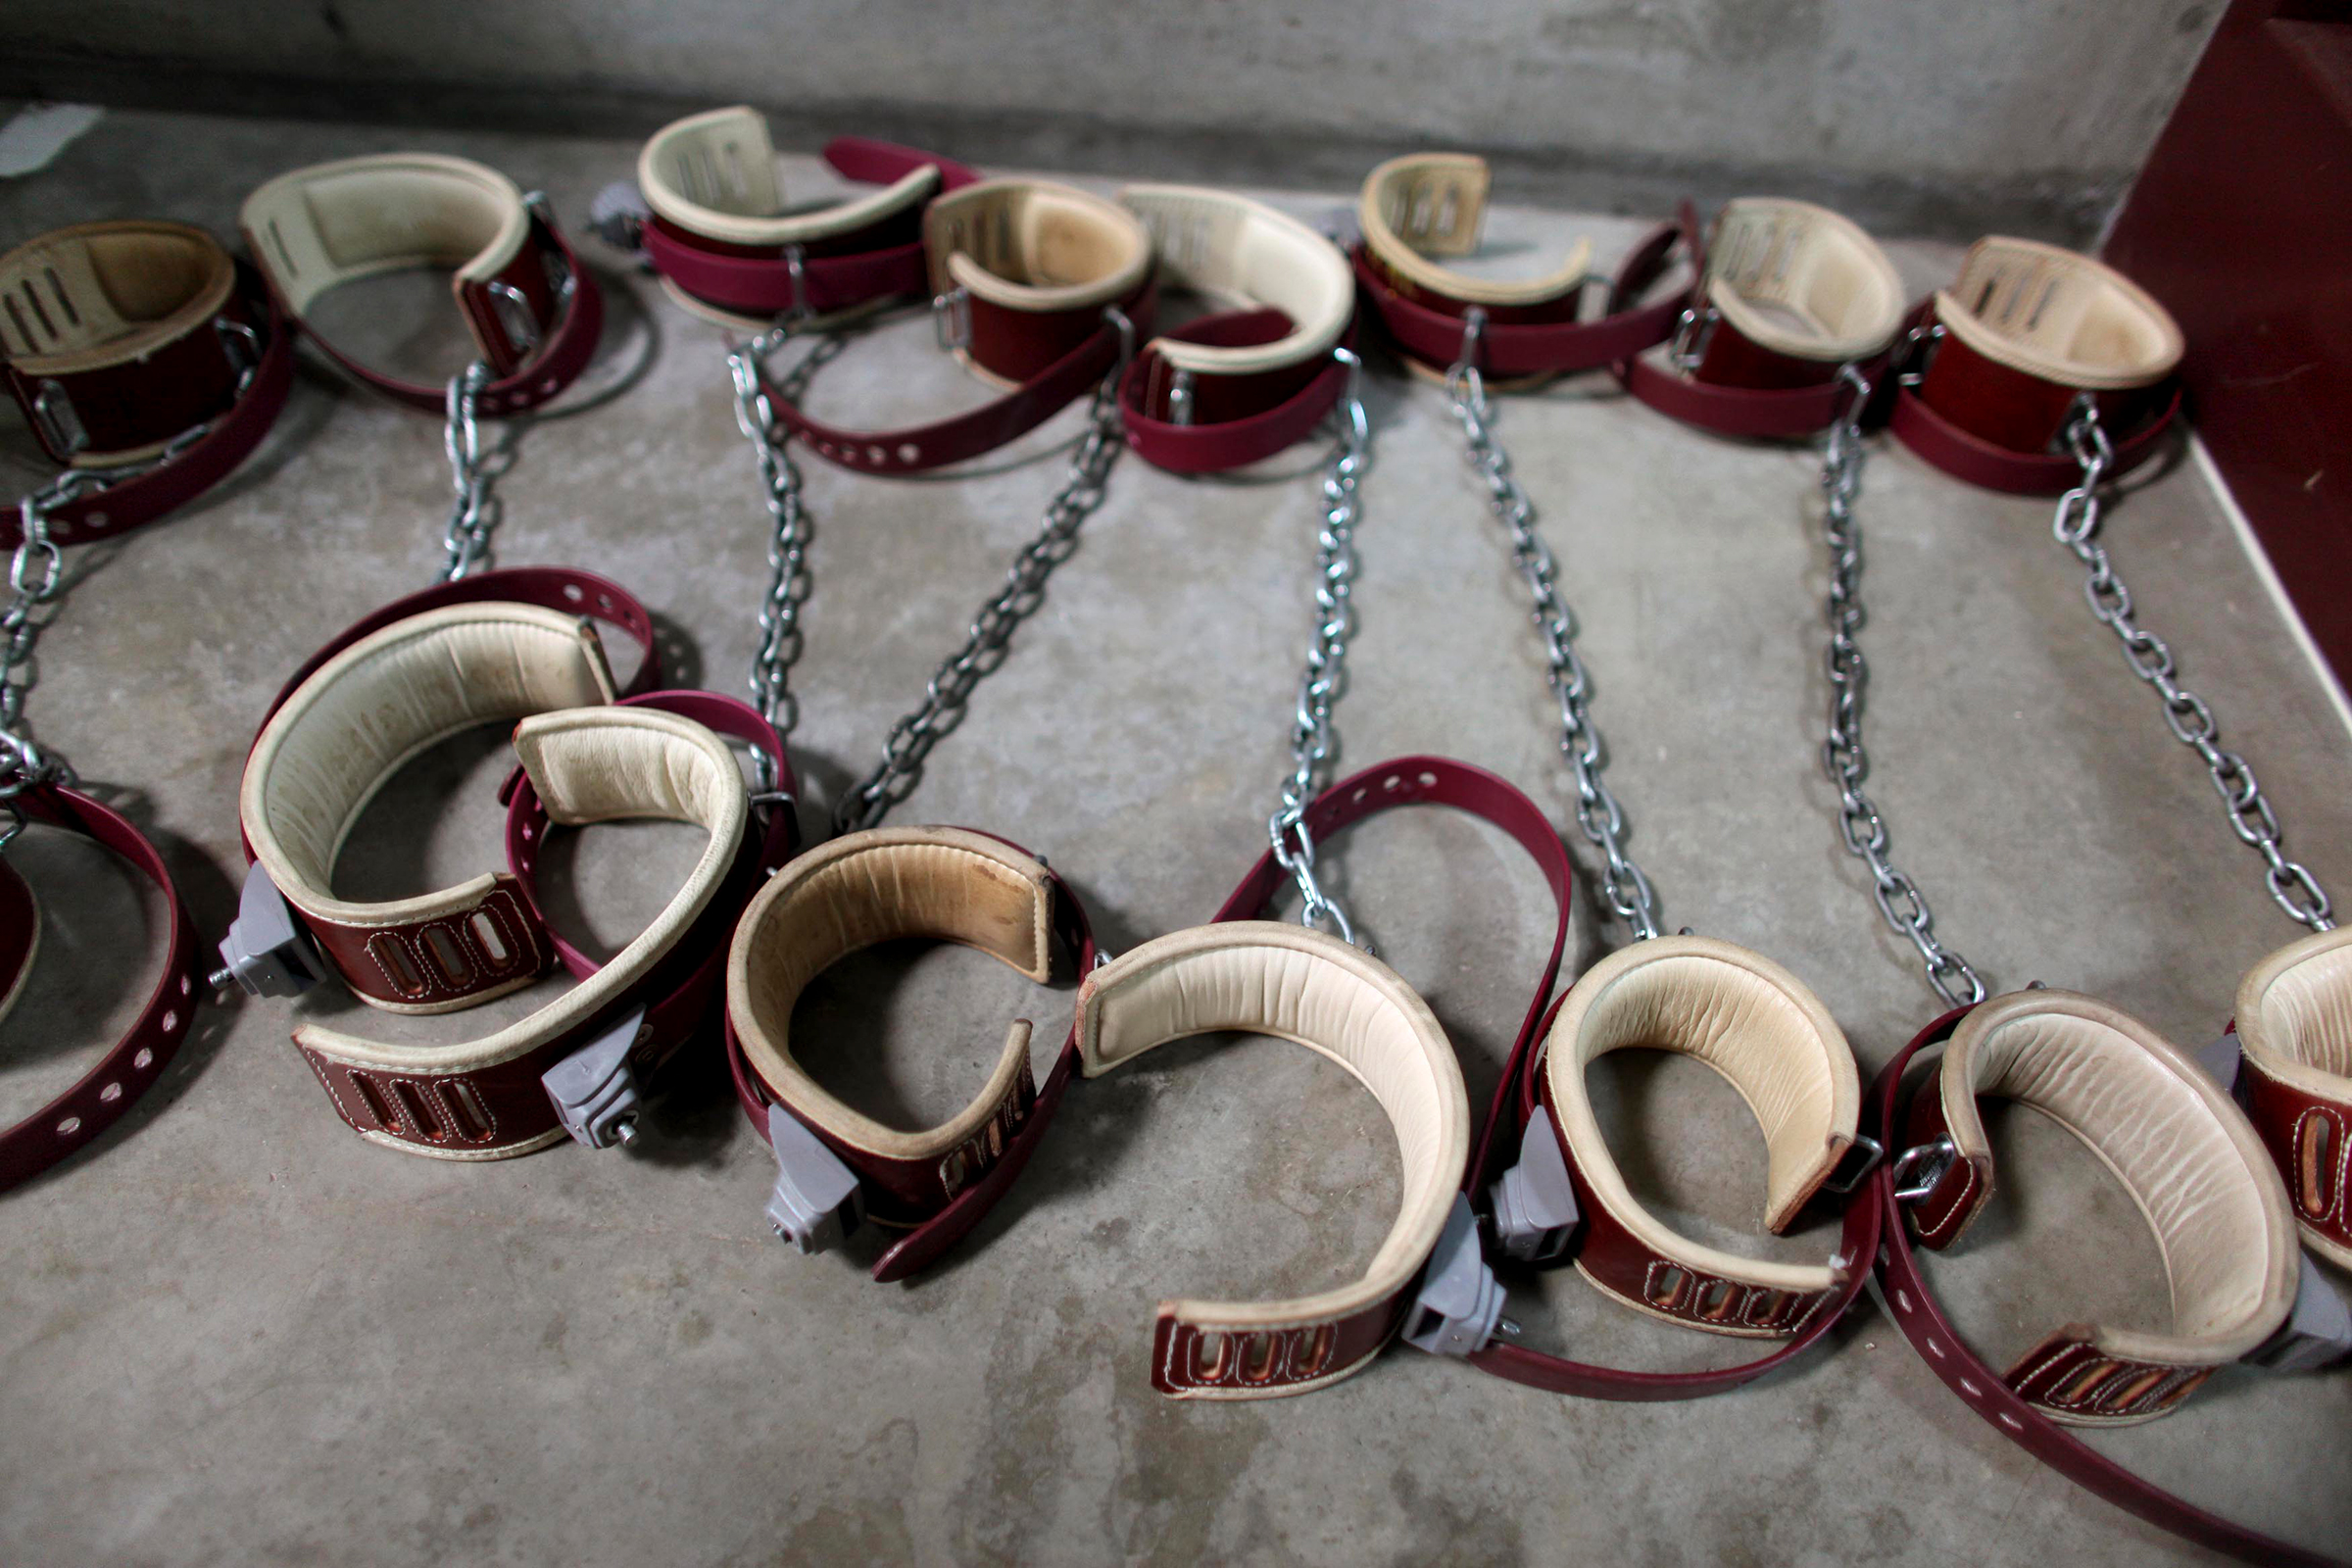 Гуантанамо всегда критиковали и продолжают критиковать за многочисленные факты нарушения прав человека, пытки, жестокое обращение с заключенными и удержание в тюрьме без предъявления обвинения. Так, в 2006 году официальные обвинения были предъявлены только десяти из 490 заключенных.
